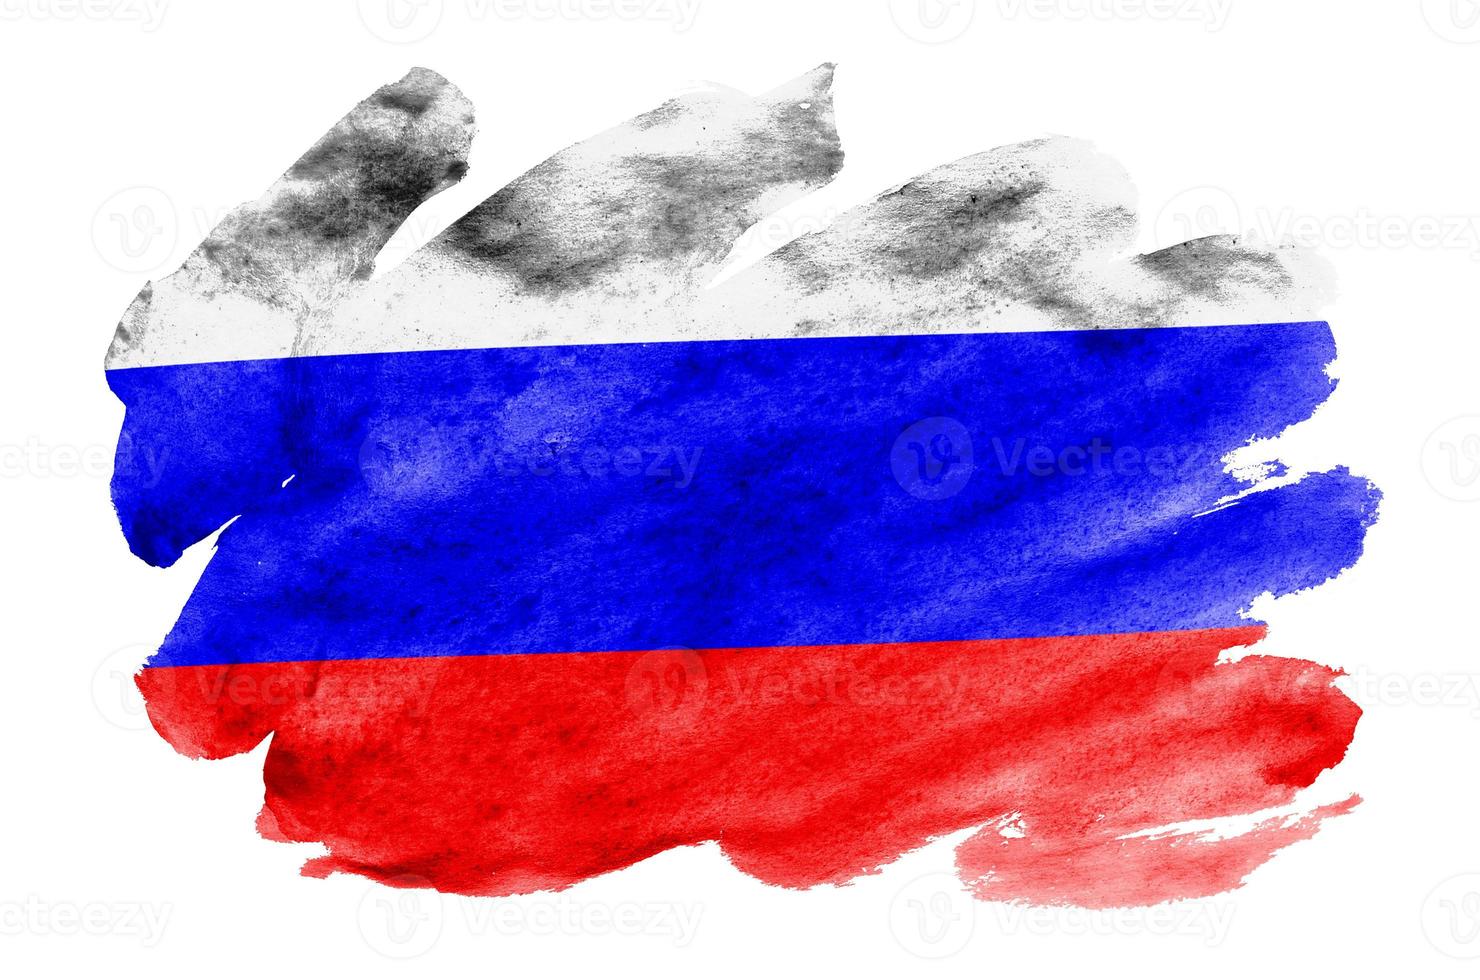 bandeira da rússia é retratada em estilo aquarela líquido isolado no fundo branco foto